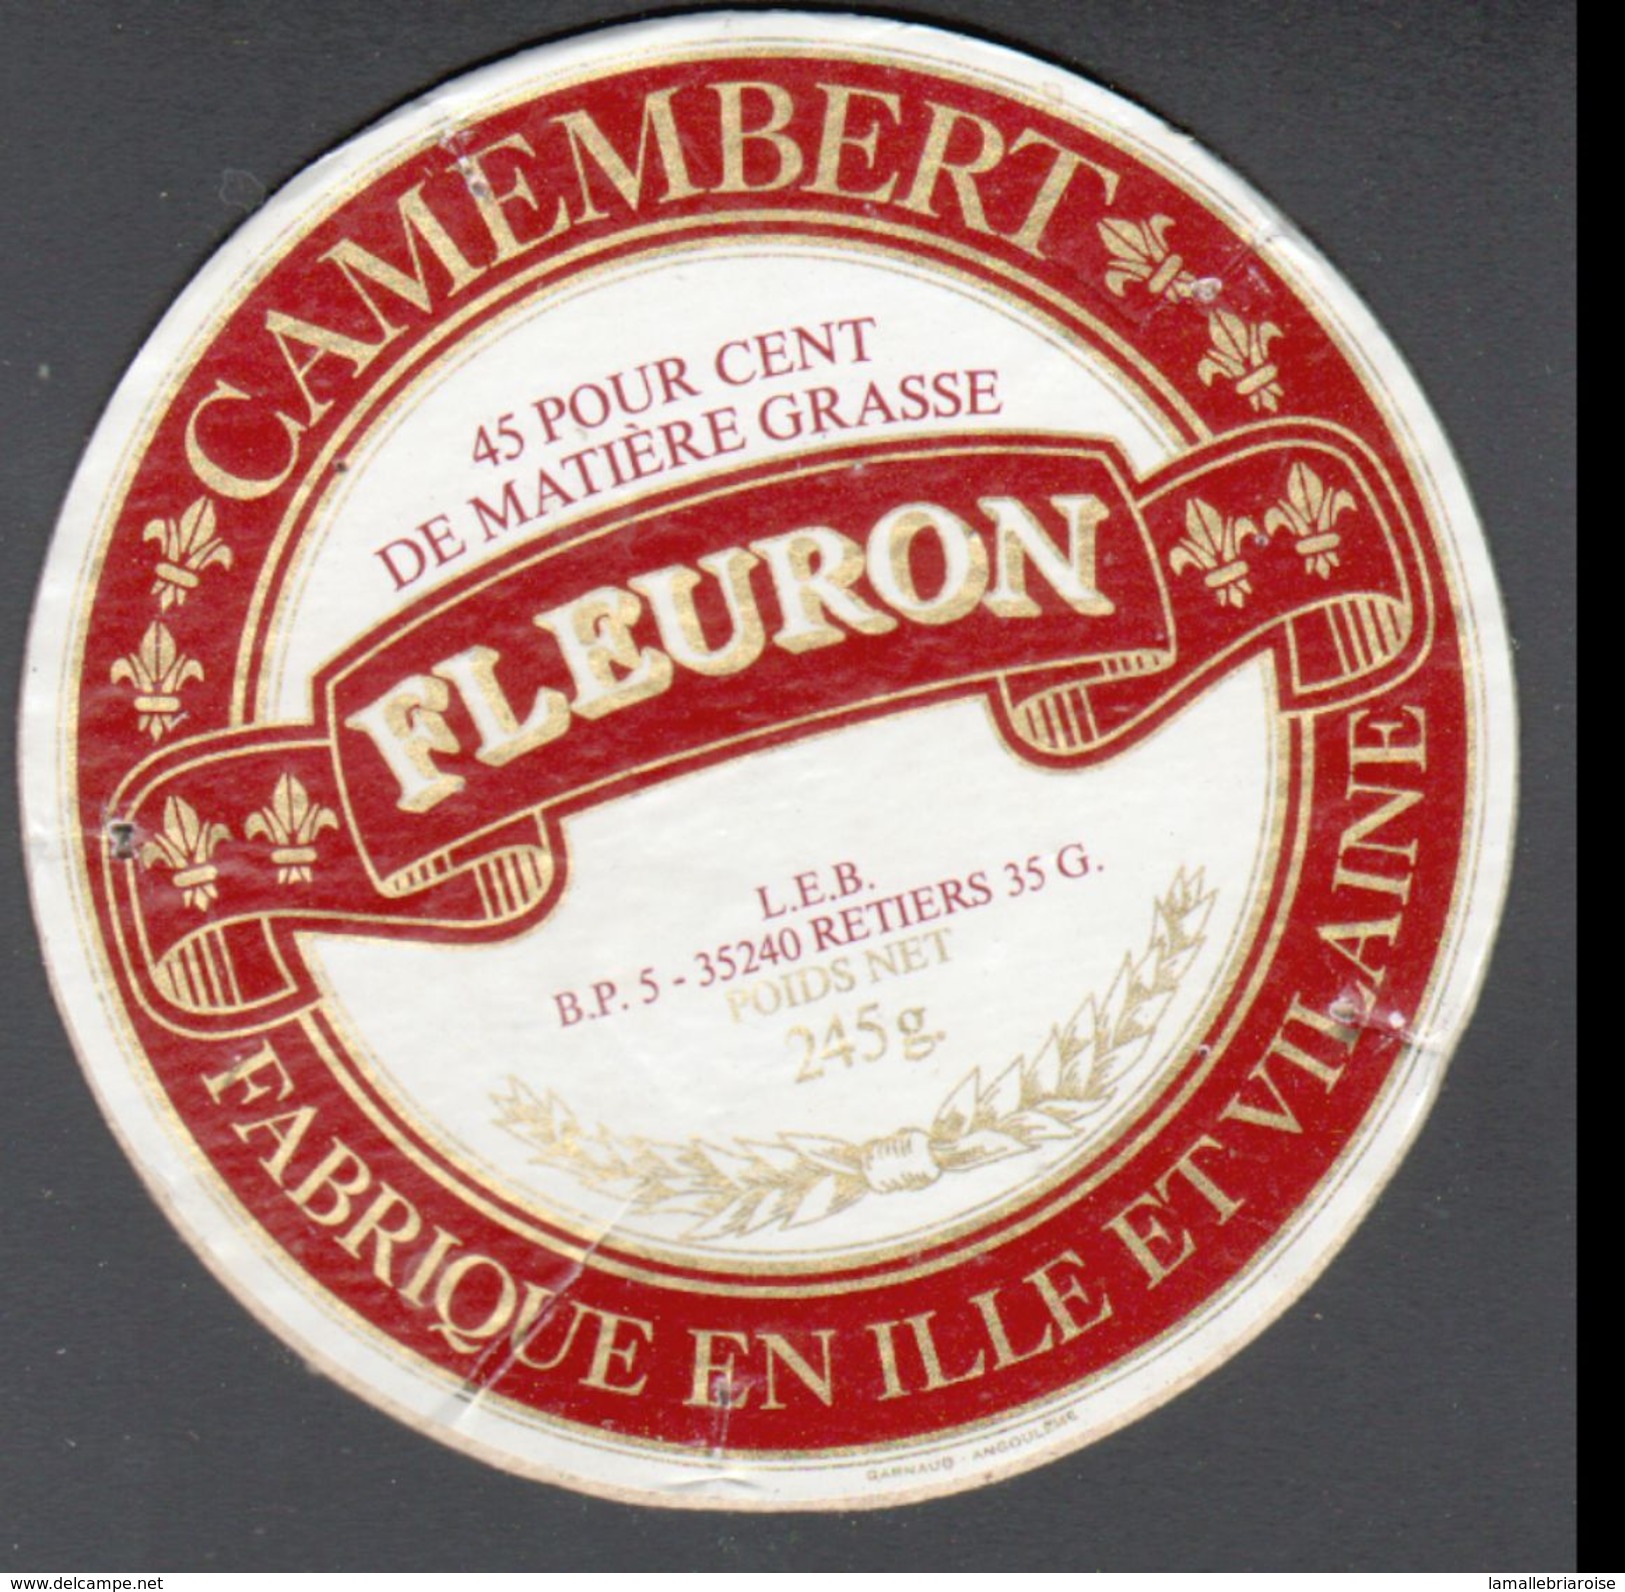 ETIQUETTE CAMEMBERT FABRIQUE EN ILLE ET VILAINE, FLEURON, 35240, LES BERTIERS - Fromage